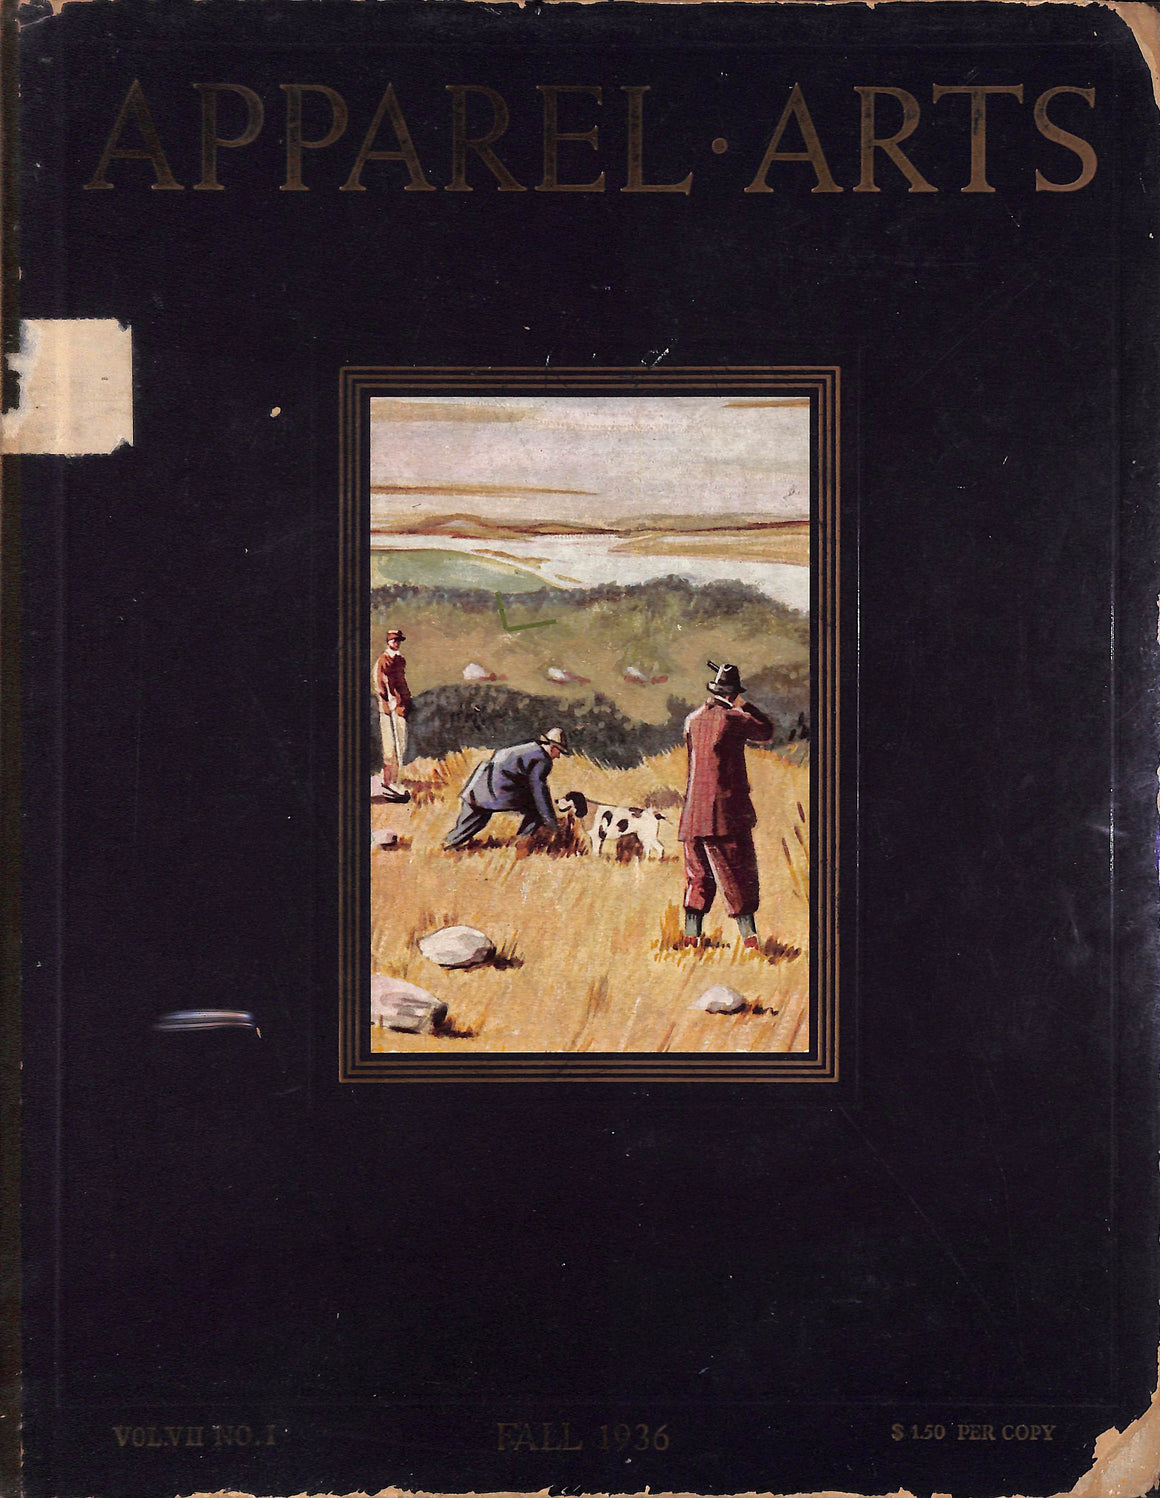 Apparel Arts Fall 1936 Vol. VII No. 1 (SOLD)